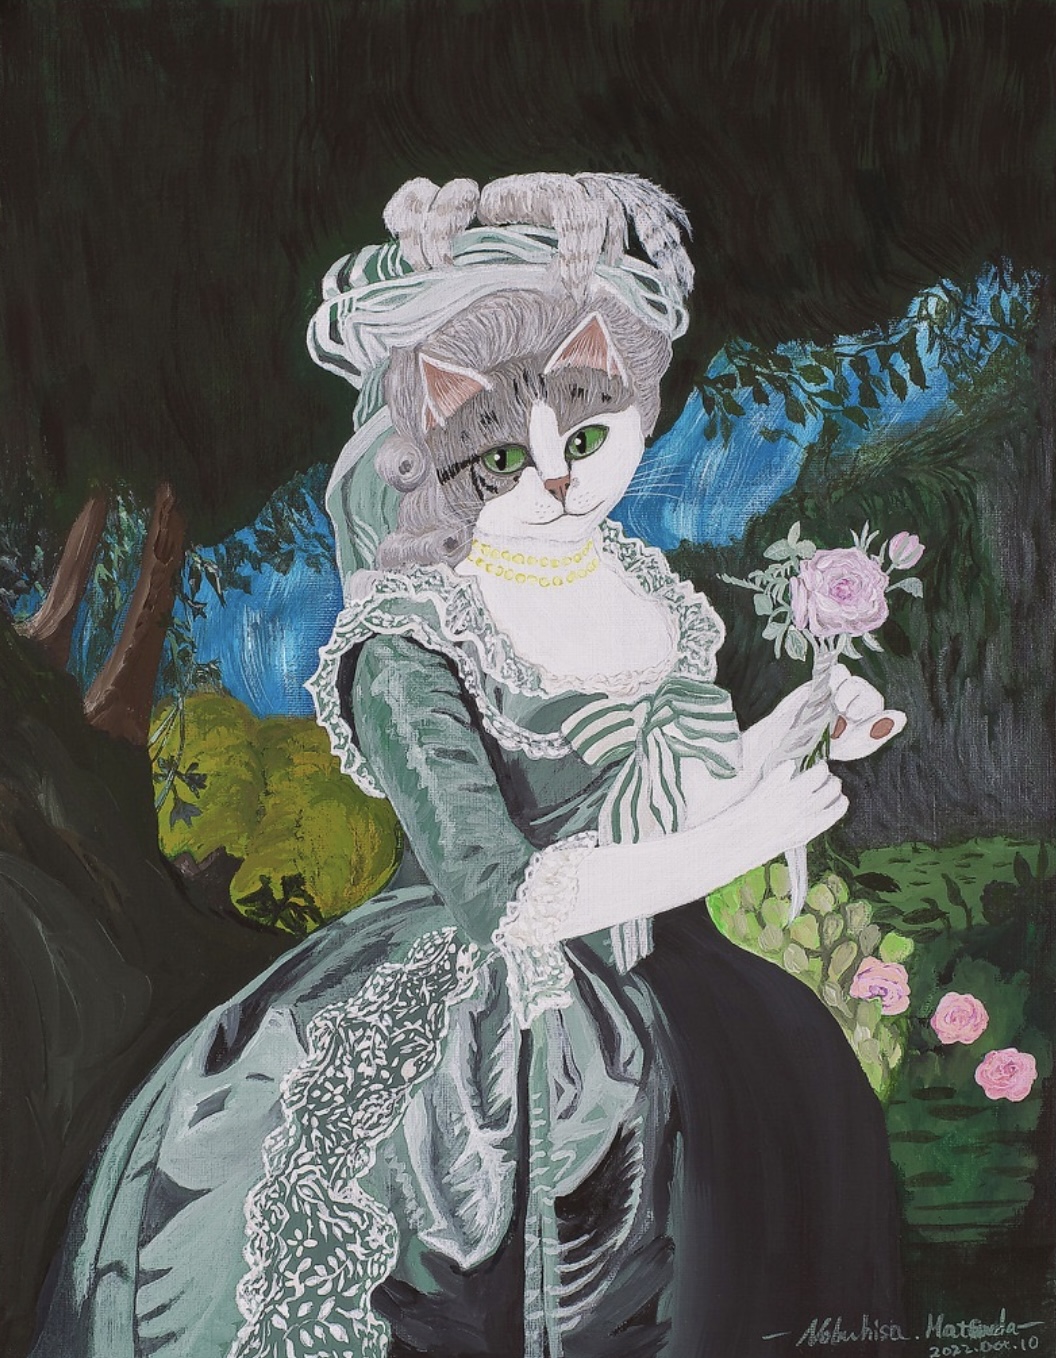 薔薇を持つマリー・ニャントワネットの肖像